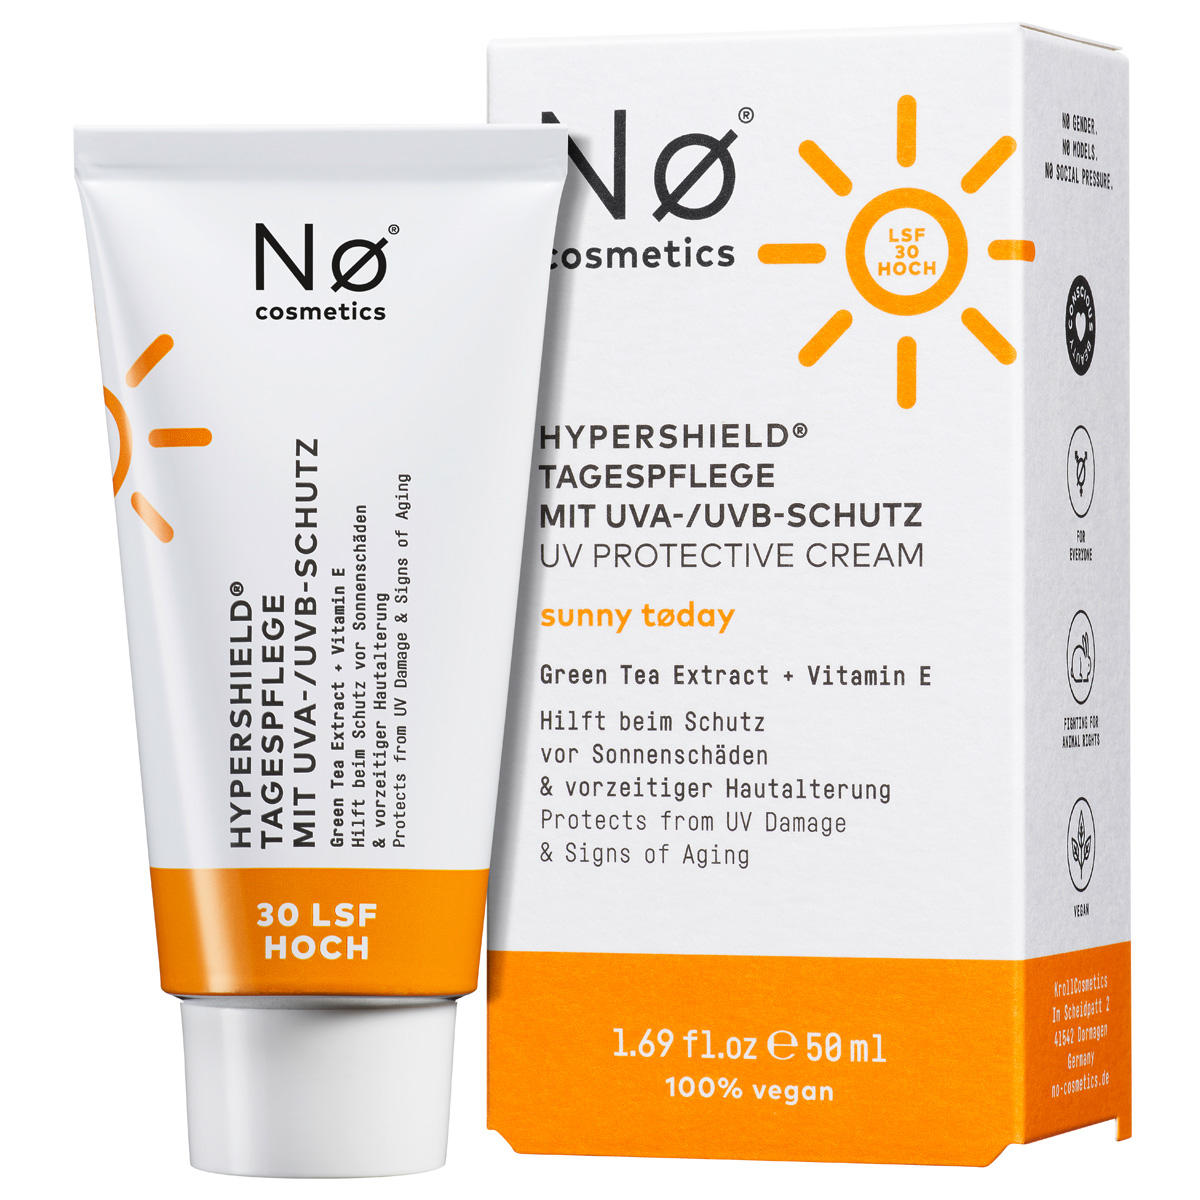 Nø Cosmetics sunny tøday Hypershield cuidado de día con protección UVA/UVB SPF 30 50 ml - 1